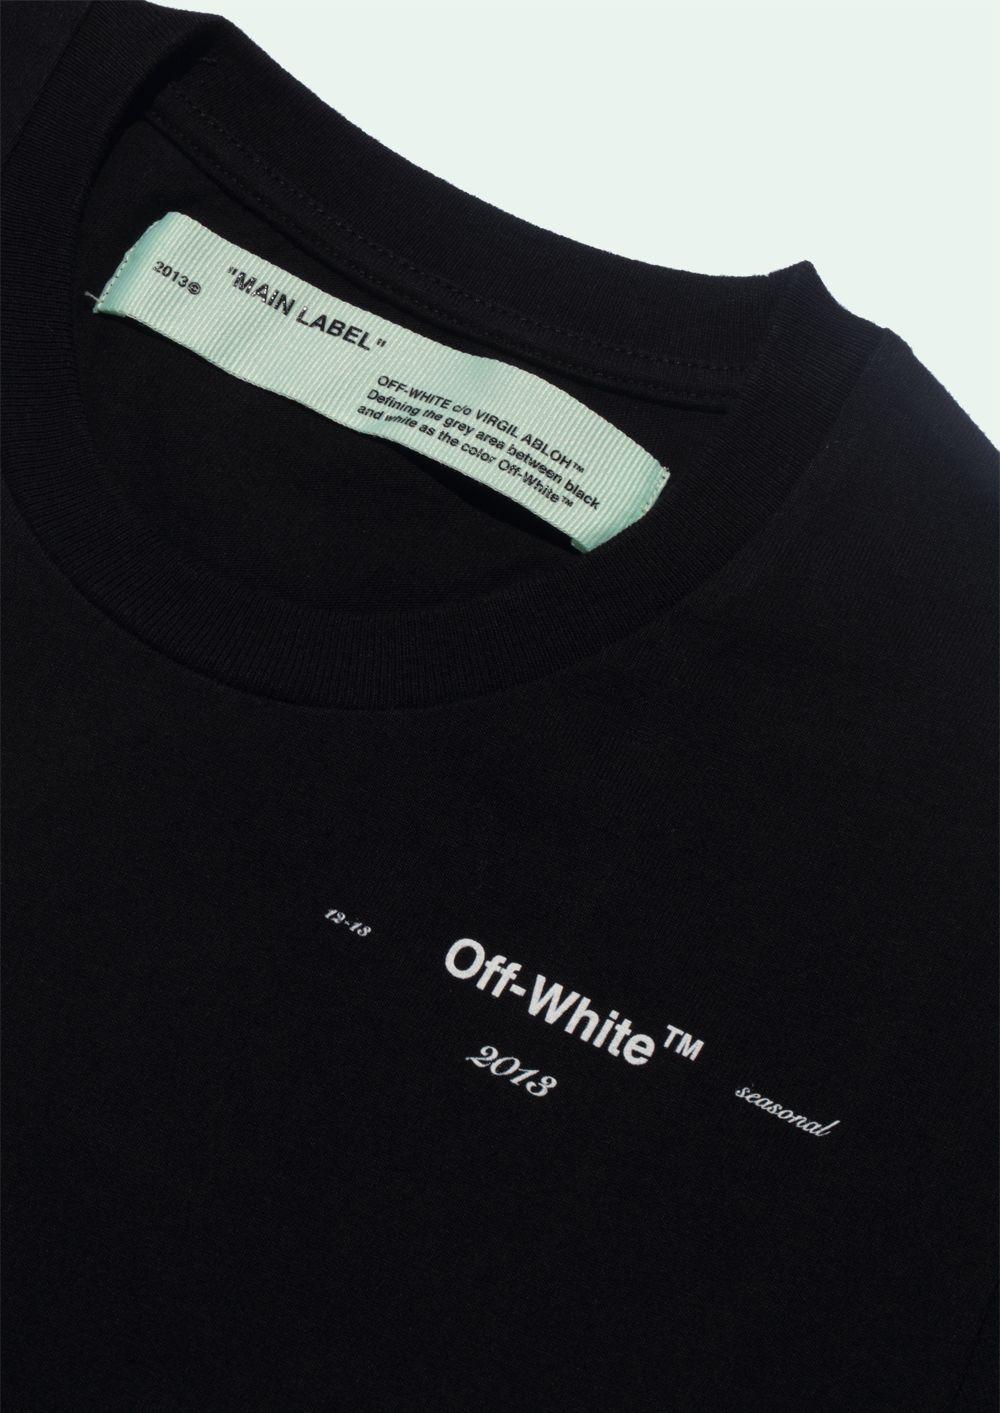 Off White 13 Logo - OFF WHITE Shirt S S